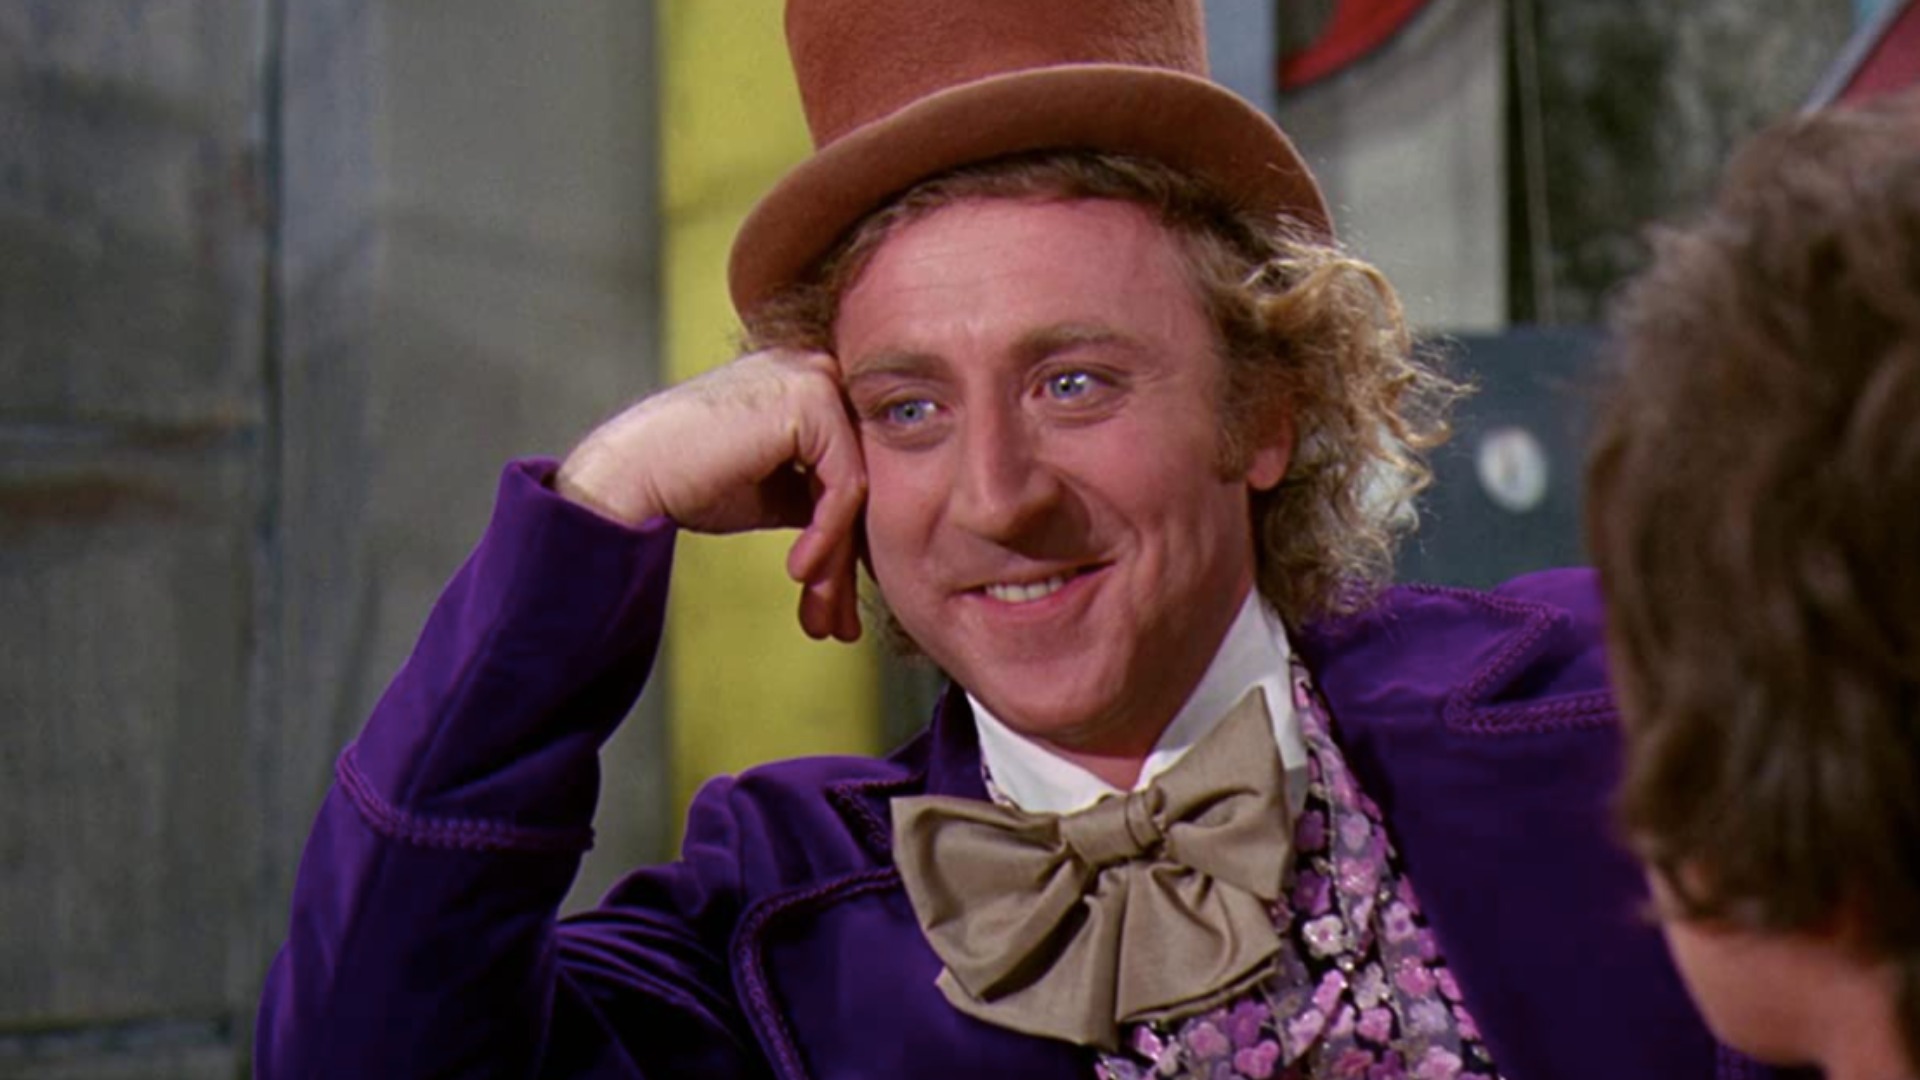 Timothee Chalamet to Play Willy Wonka in Warner Bros. Origin Movie